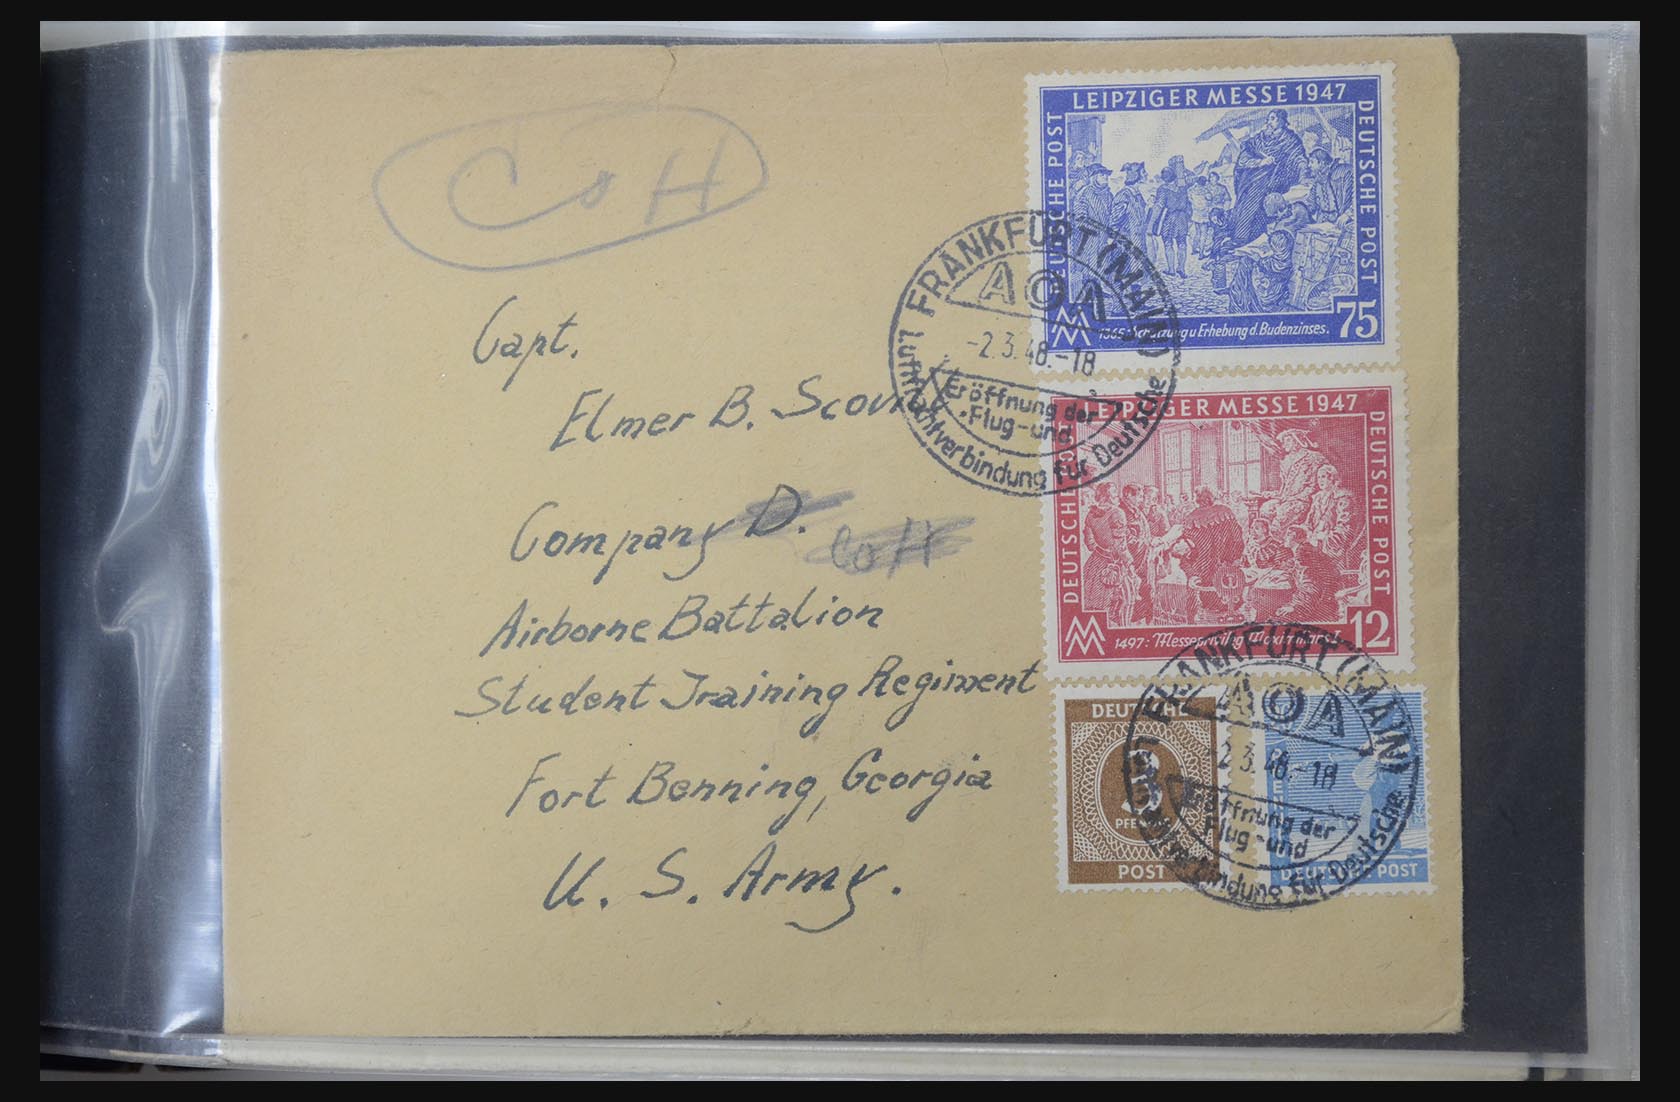 31581 053 - 31581 Duitsland brieven en FDC's 1945-1981.